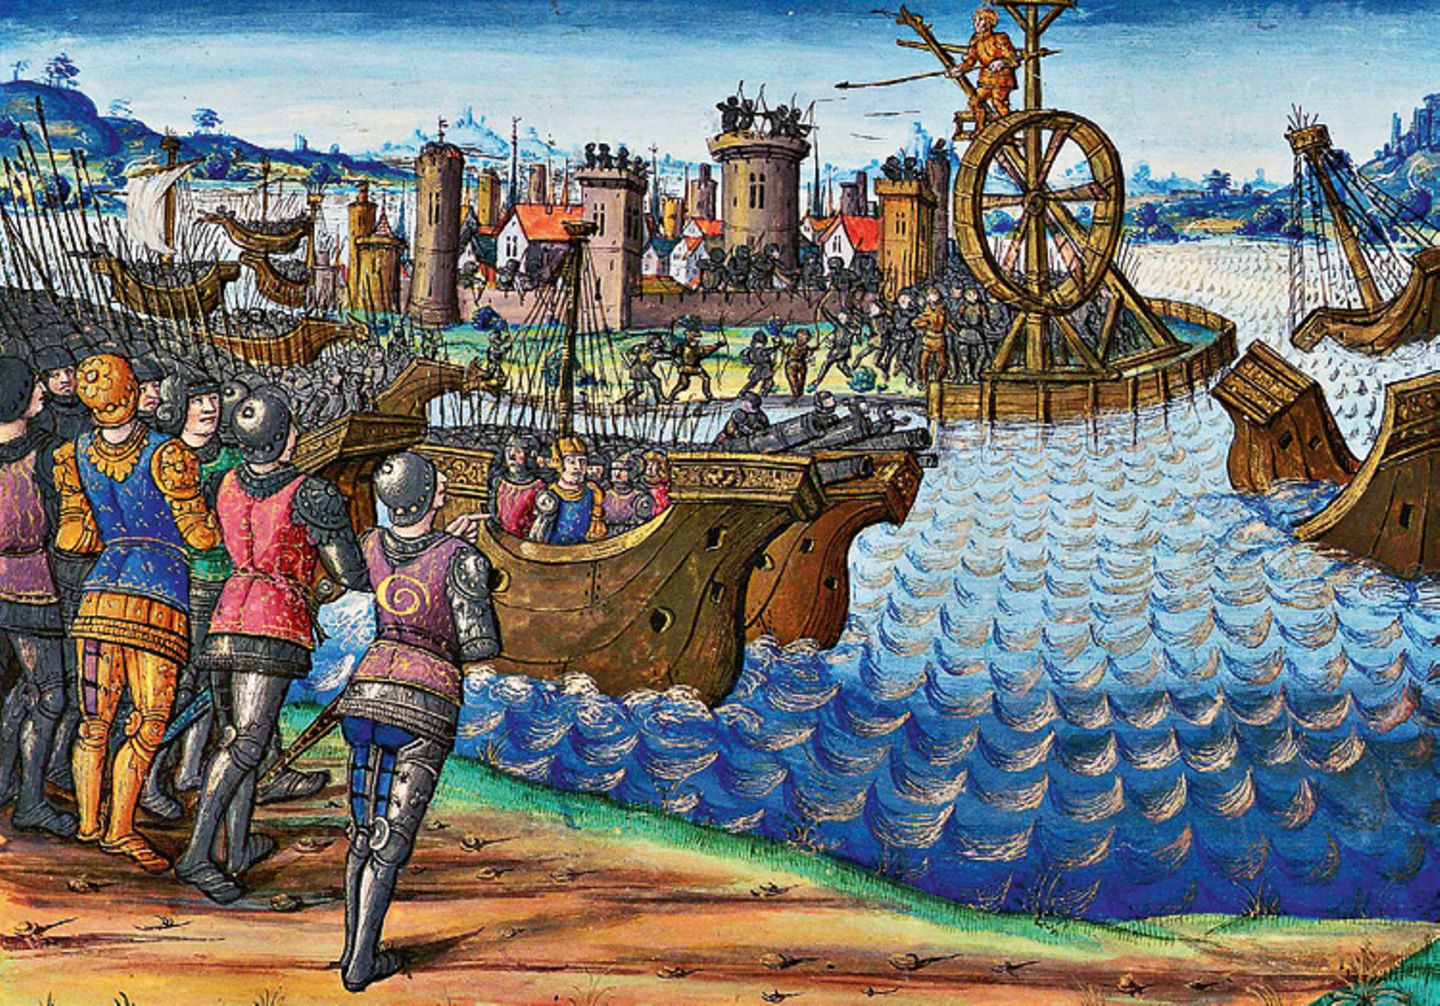 Belagerung von Tyros: Tyros, auf einer Insel nahe der Küste gelegen, ist reich, hat eine starke Flotte – und hohe Mauern. Alexander attackiert die Stadt mit Schiffen, lässt aber auch einen Damm zum Eiland errichten (mittelalterliche Darstellung)